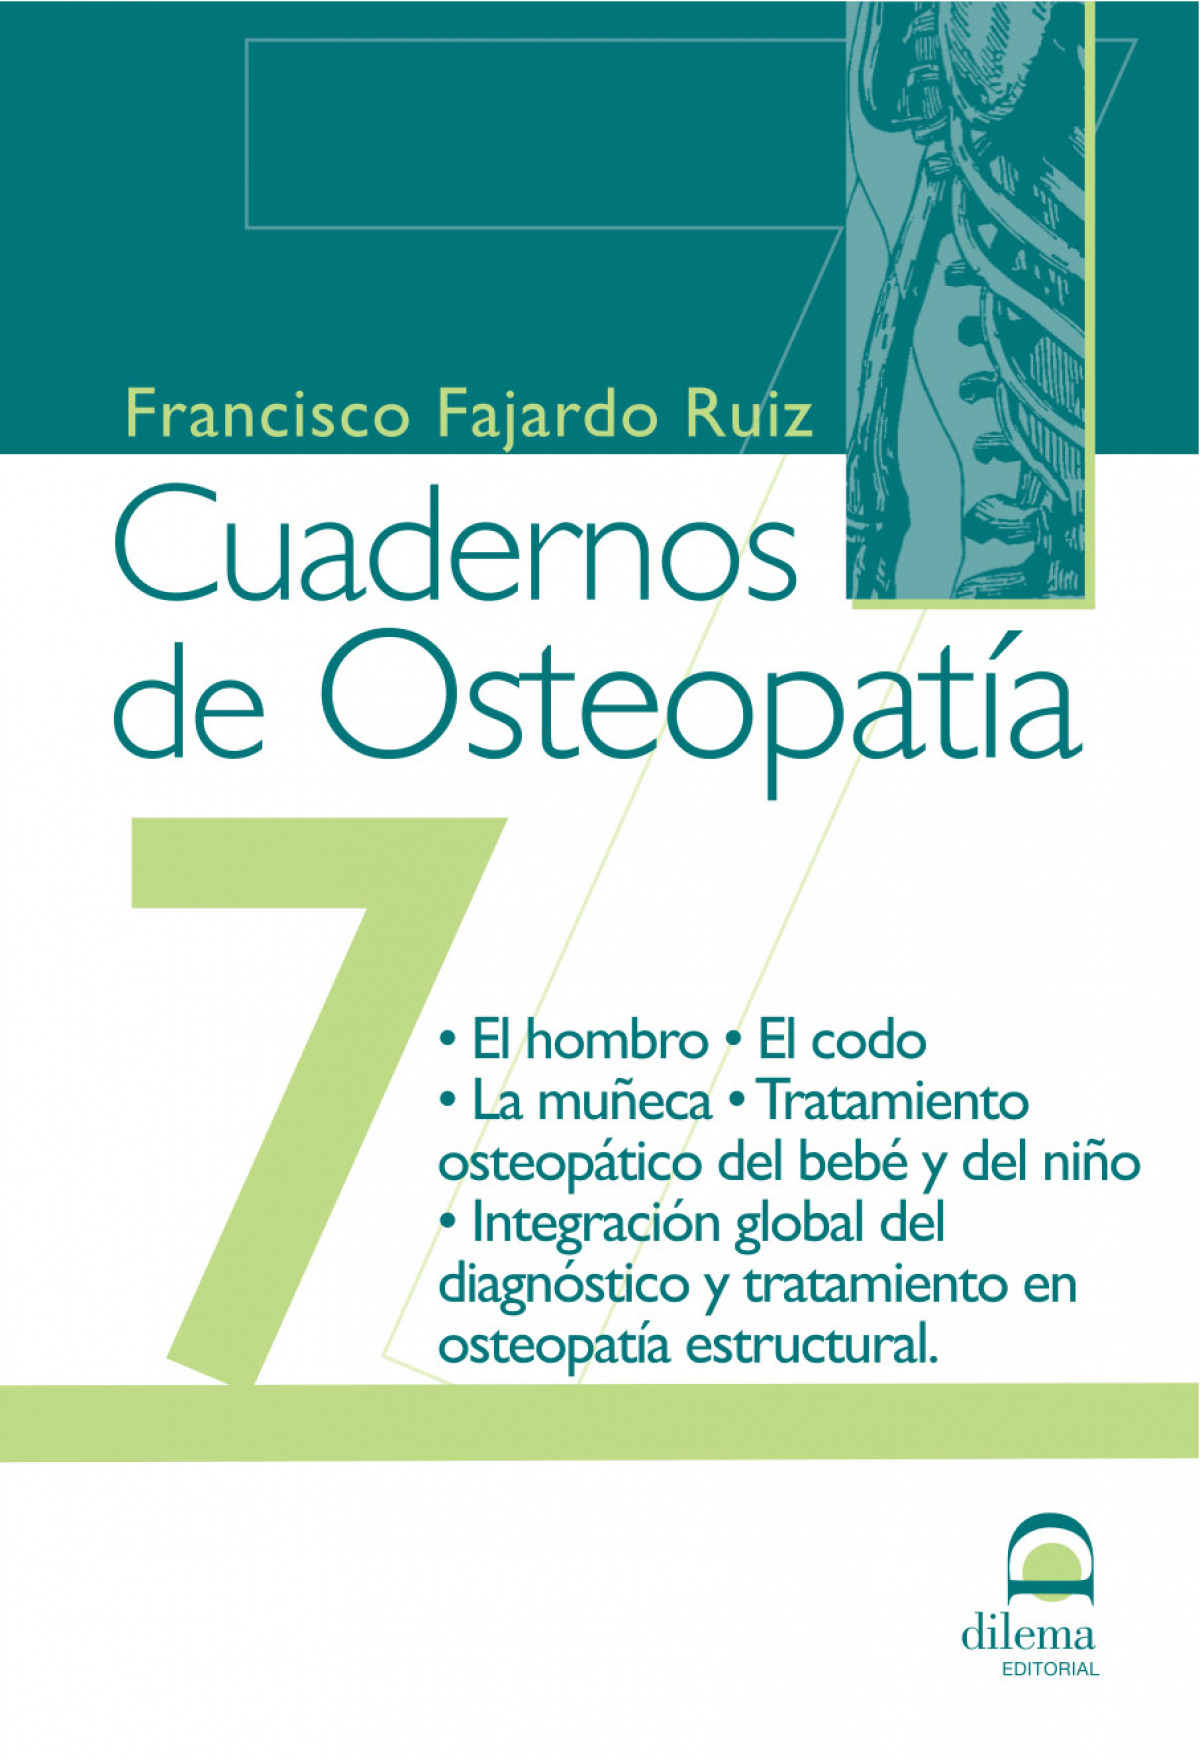 Cuadernos de osteopatia 7